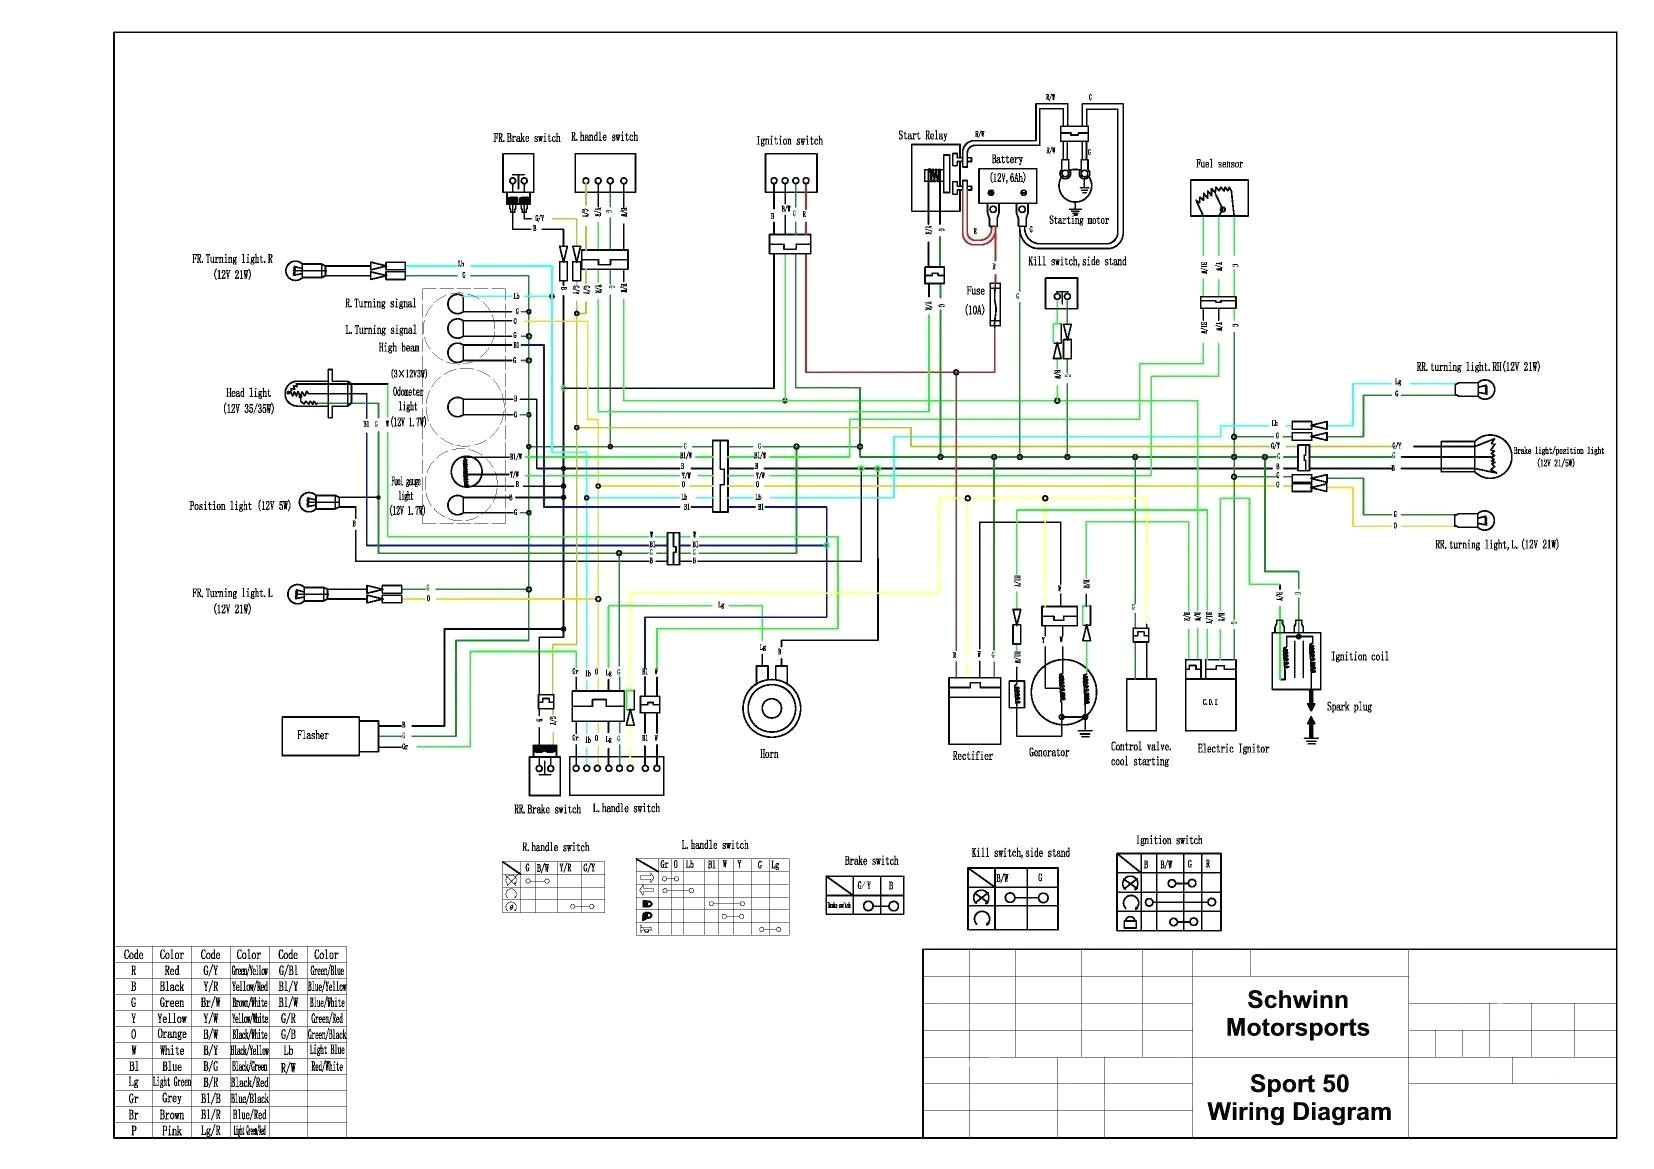 2014 tao moped wiring diagram wiring diagram blog 2014 tao moped wiring diagram